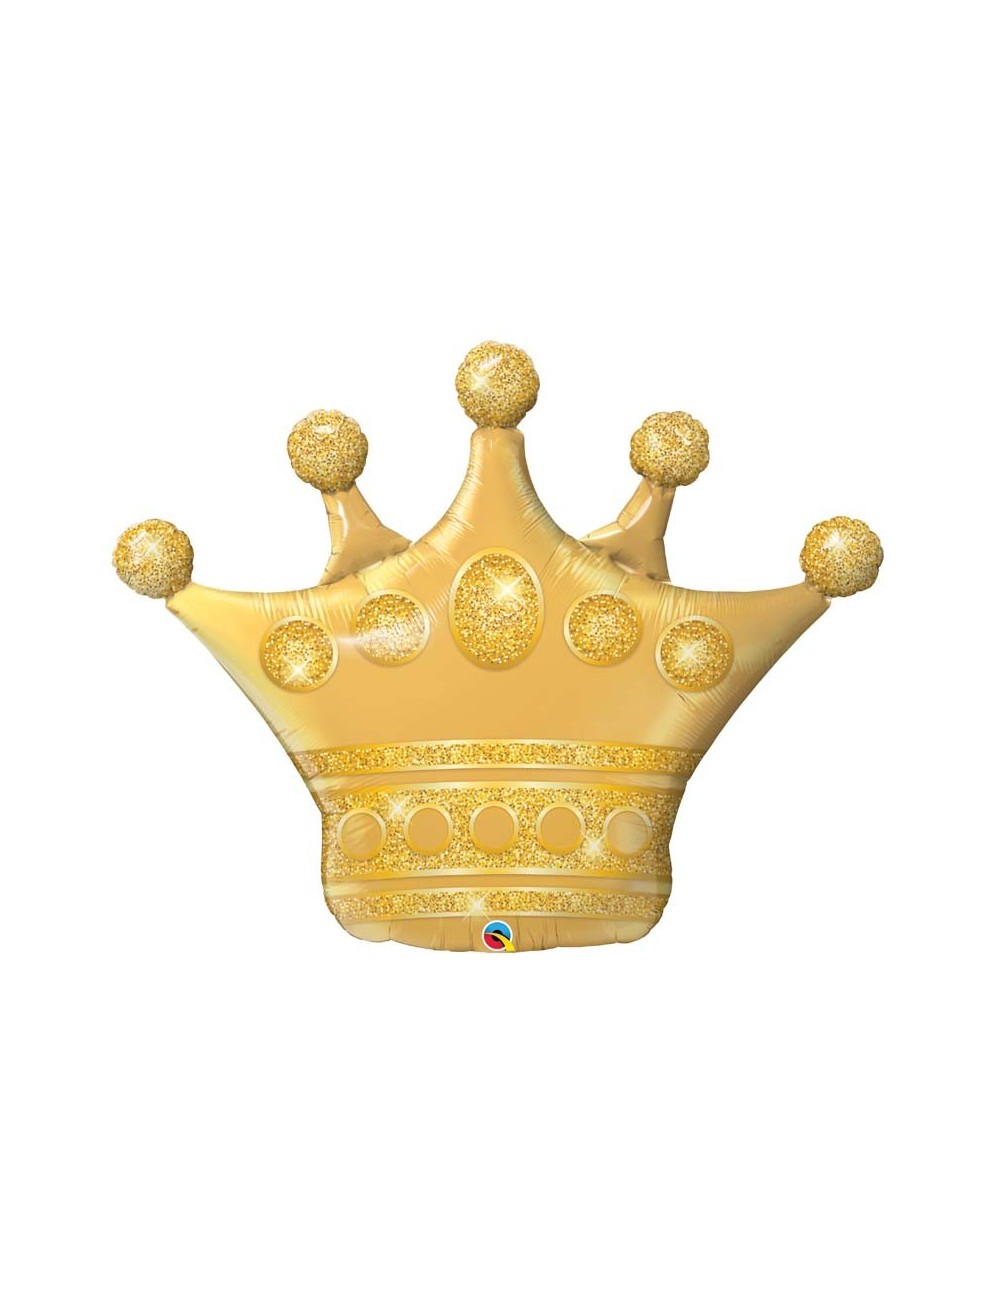 Ballon couronne dorée